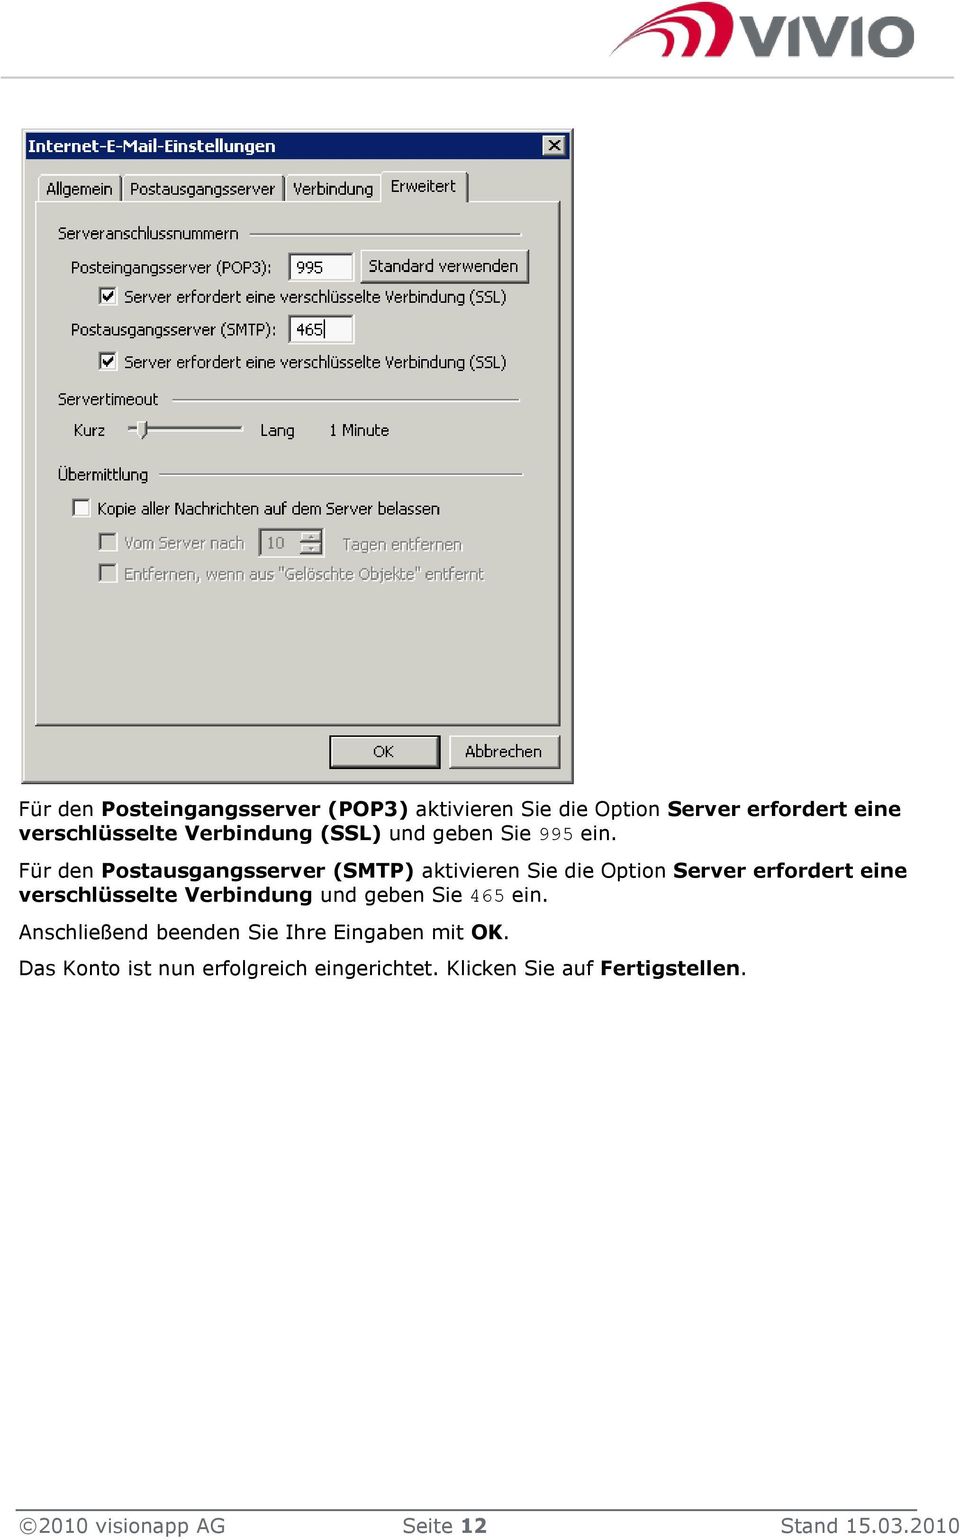 Für den Postausgangsserver (SMTP) aktivieren Sie die Option Server erfordert eine verschlüsselte Verbindung